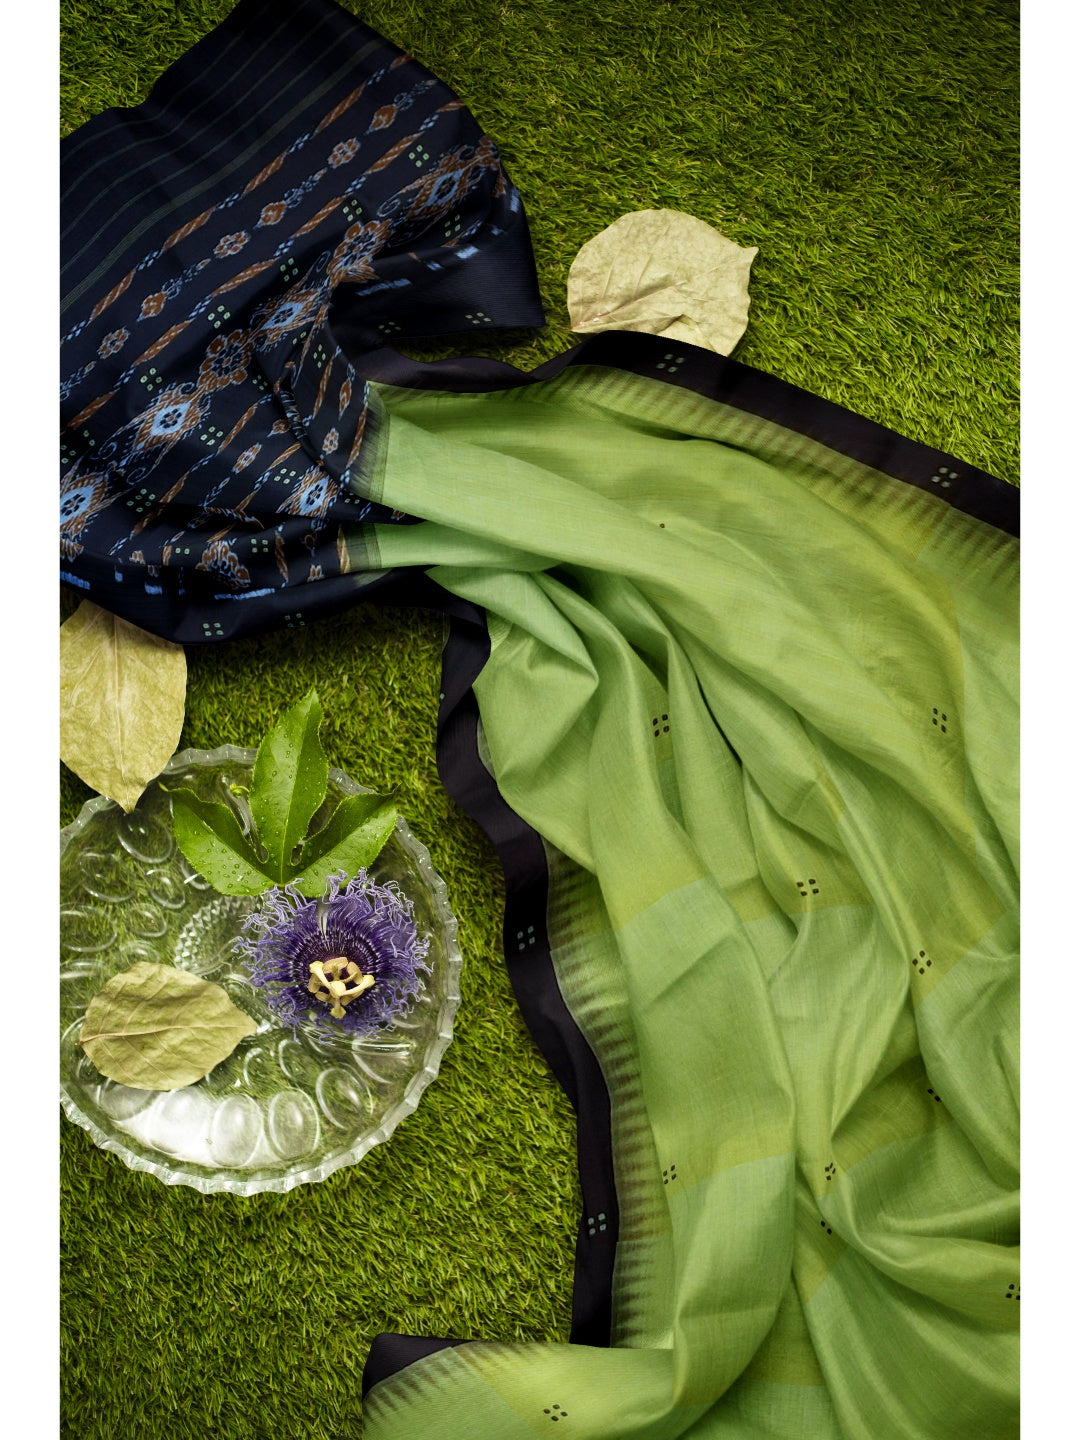 OliveGreen Cotton Odisha Ikat saree with cotton ikat blouse piece